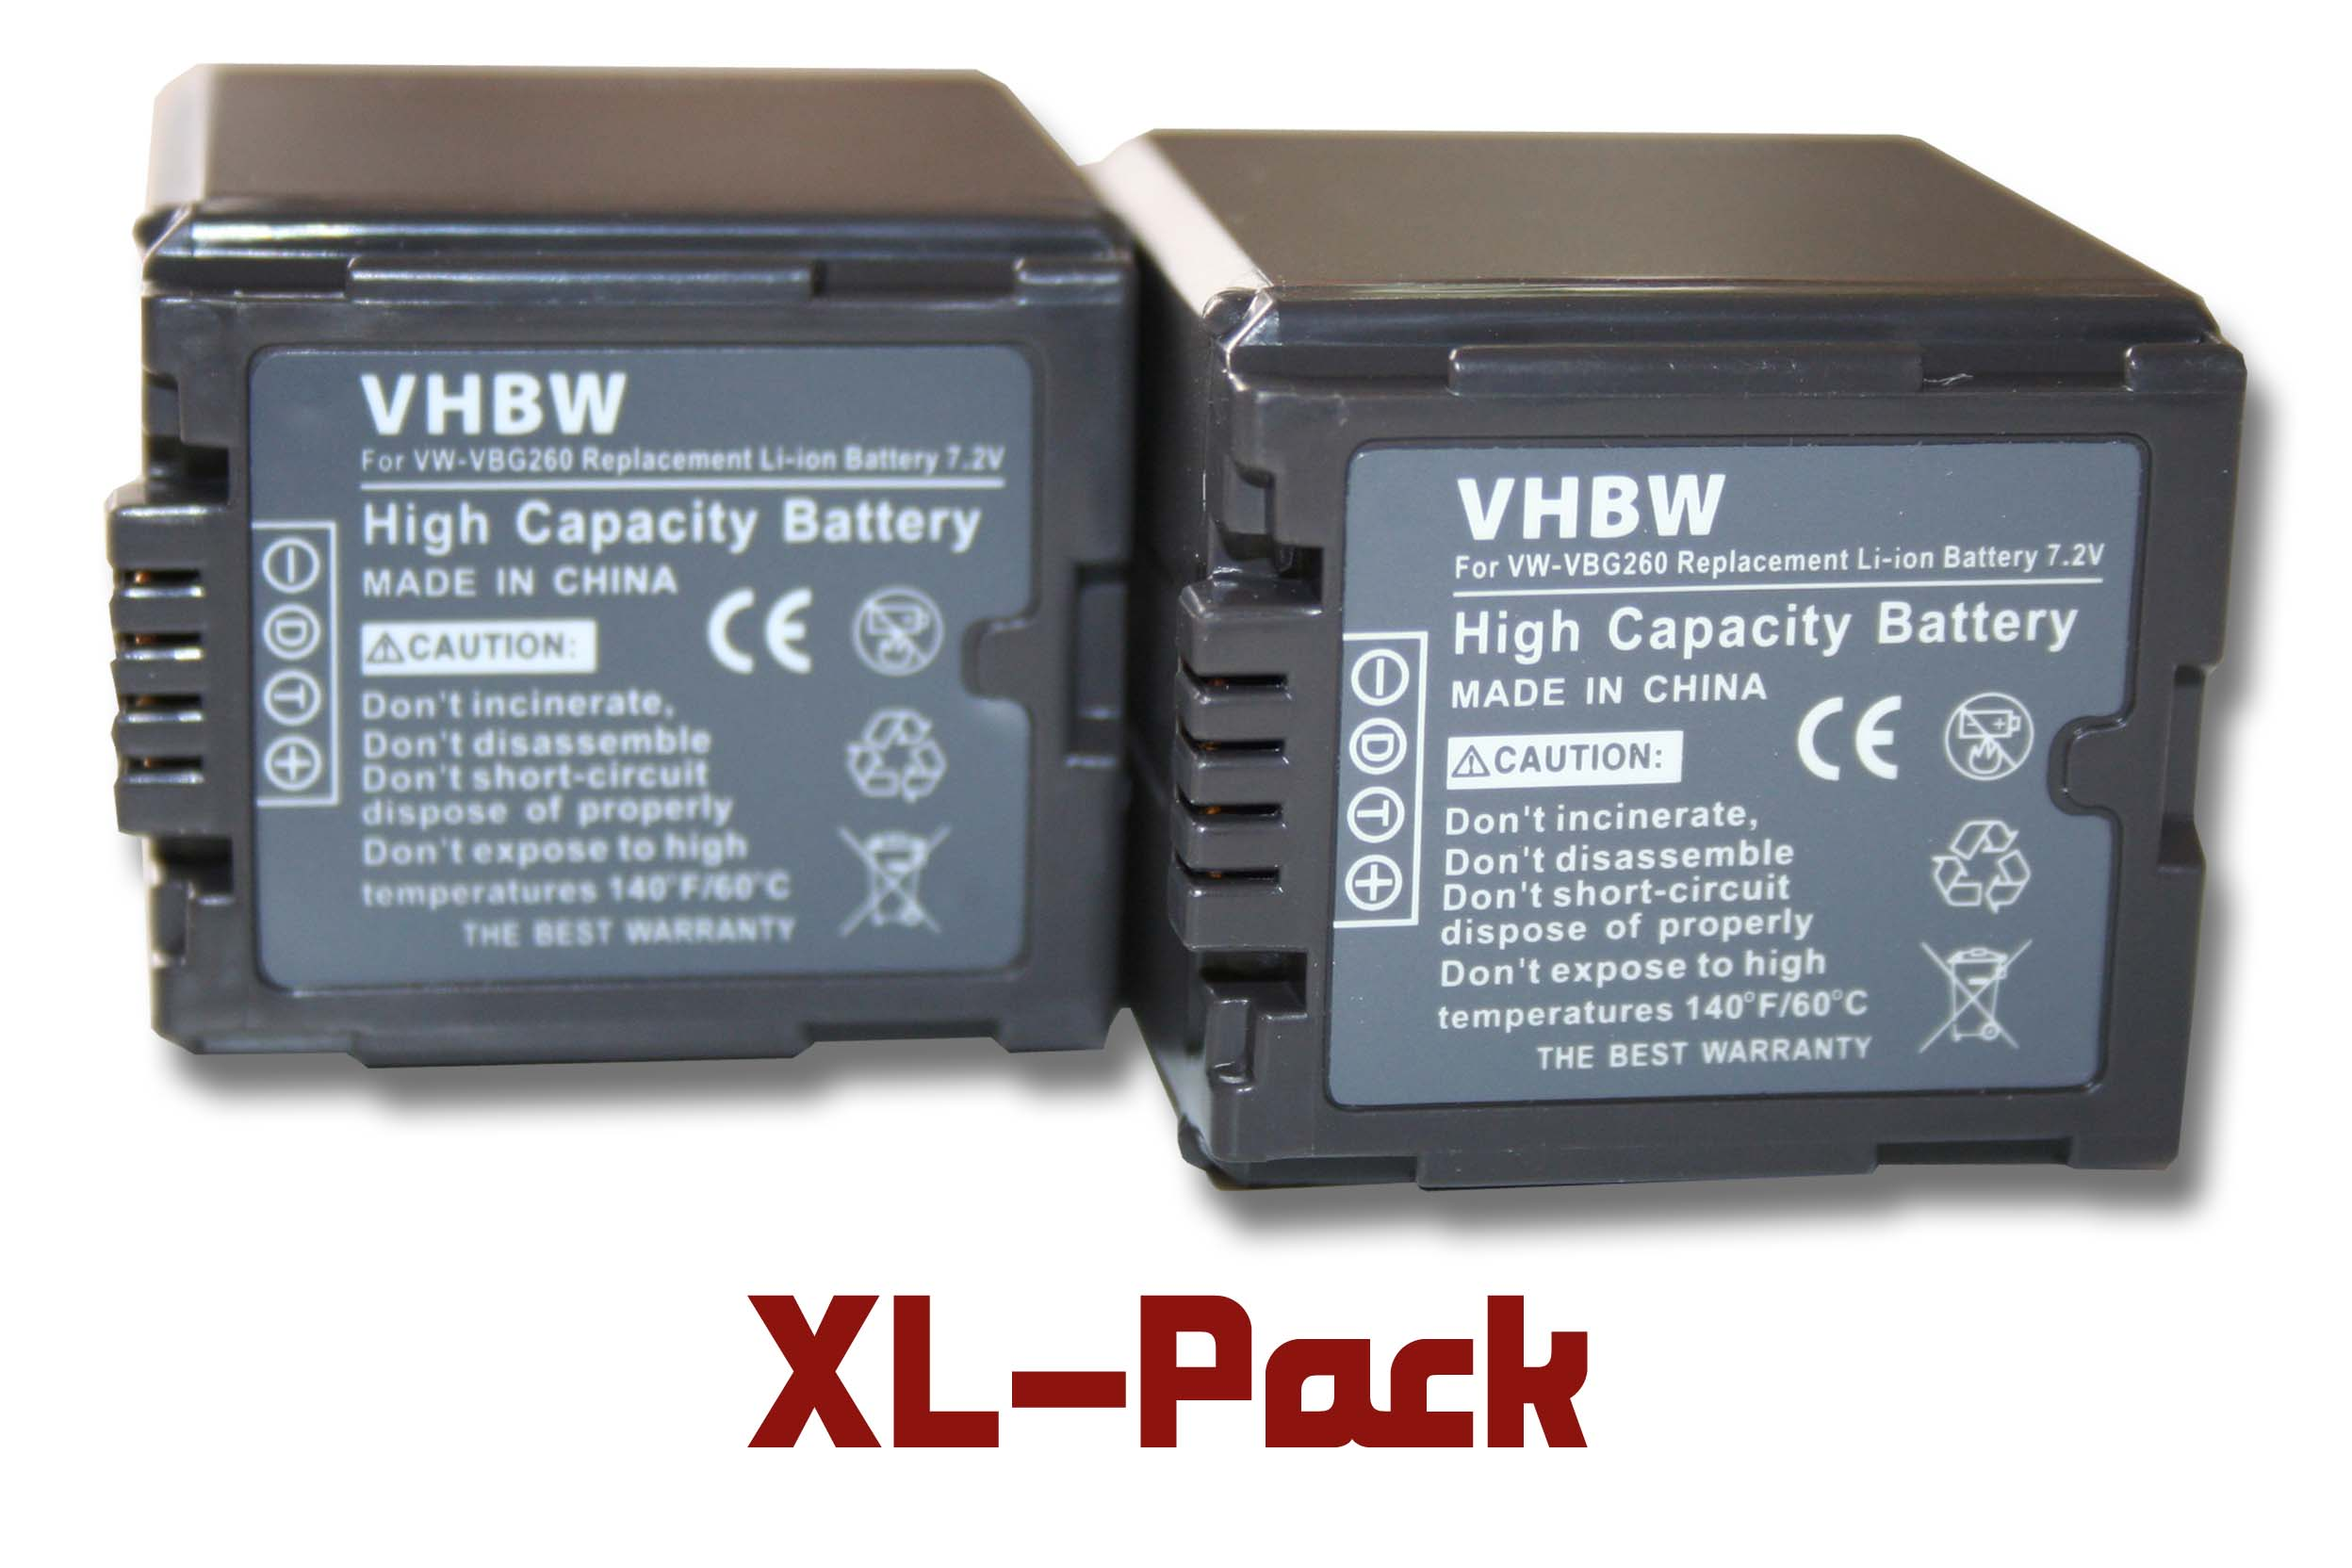 mit - HDC-HS200, 7.2 Volt, Li-Ion Videokamera, 2000 HDC-HS300, VHBW kompatibel HDC-HS100 Panasonic HDC-HS20, HDC-DX1, Akku